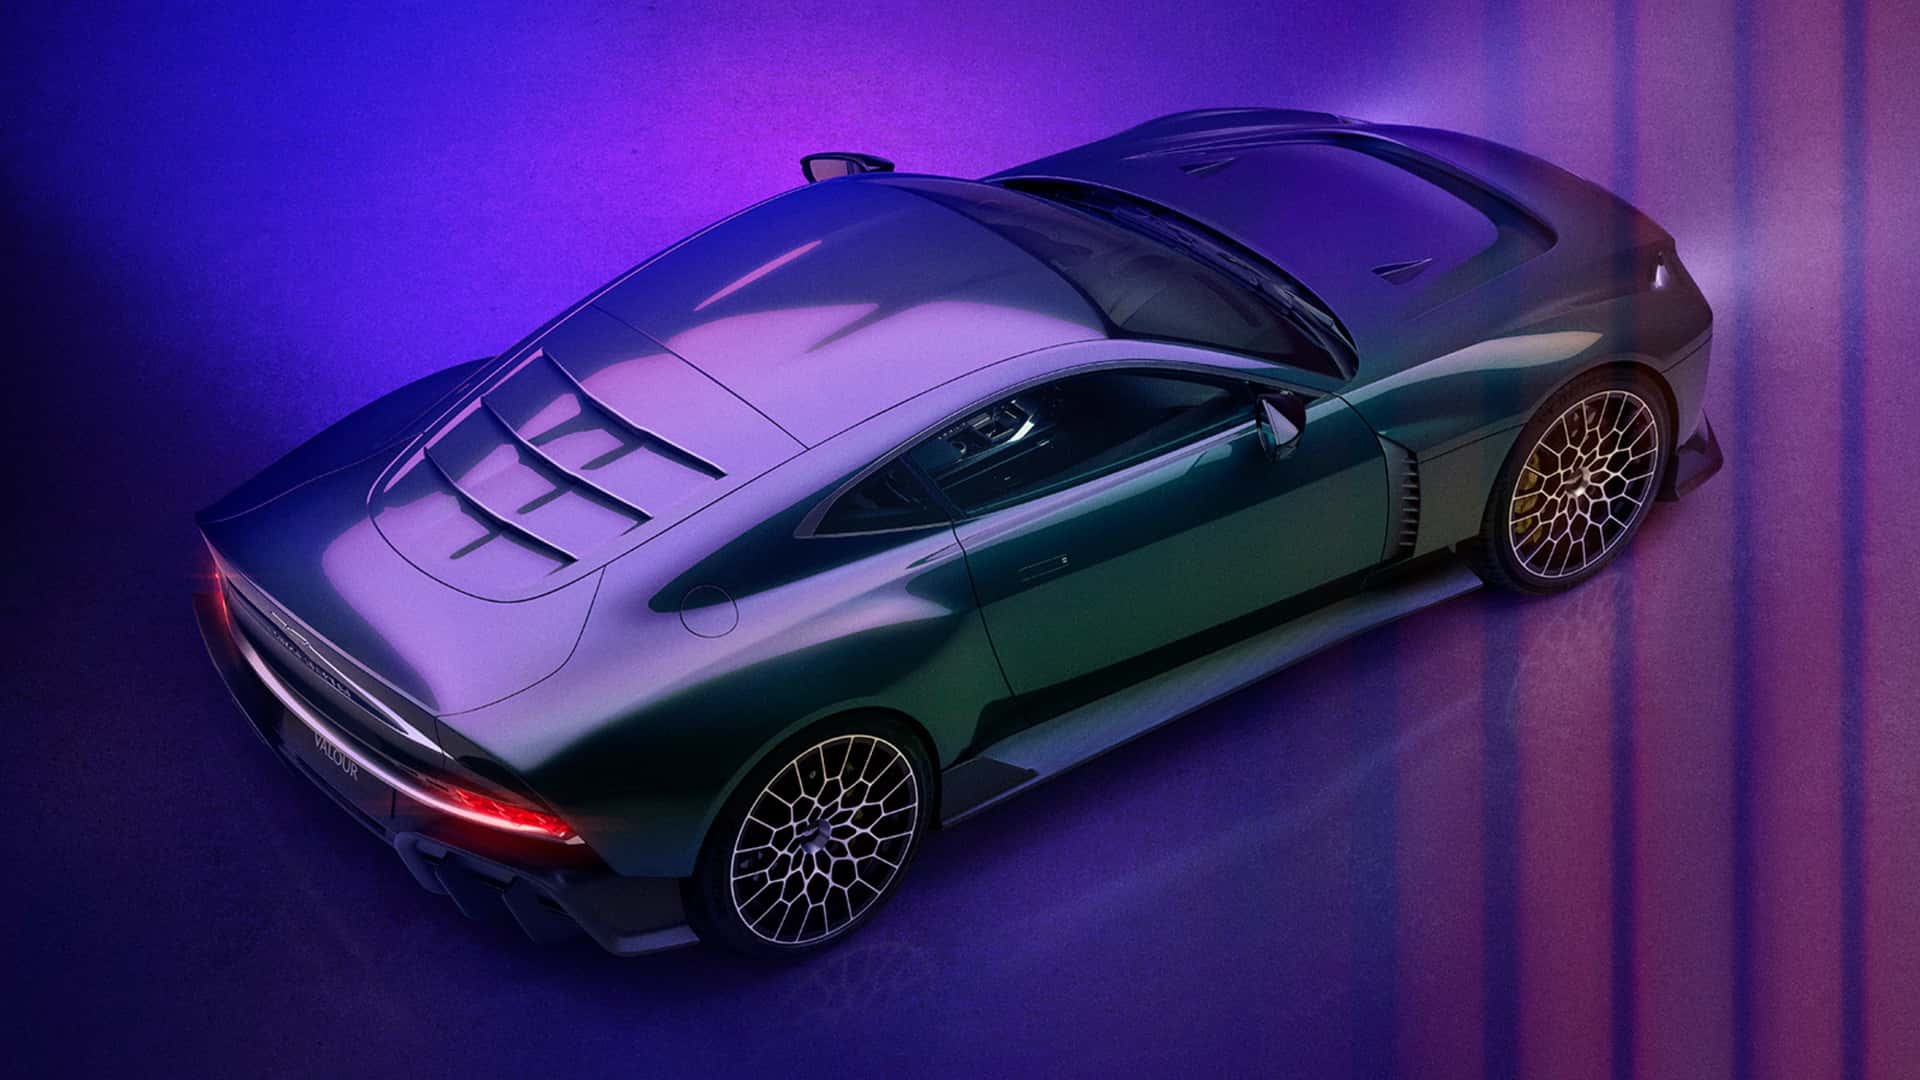 Siêu xe Aston Martin giá 1,5 triệu USD nhưng chỉ trang bị số sàn- Ảnh 1.